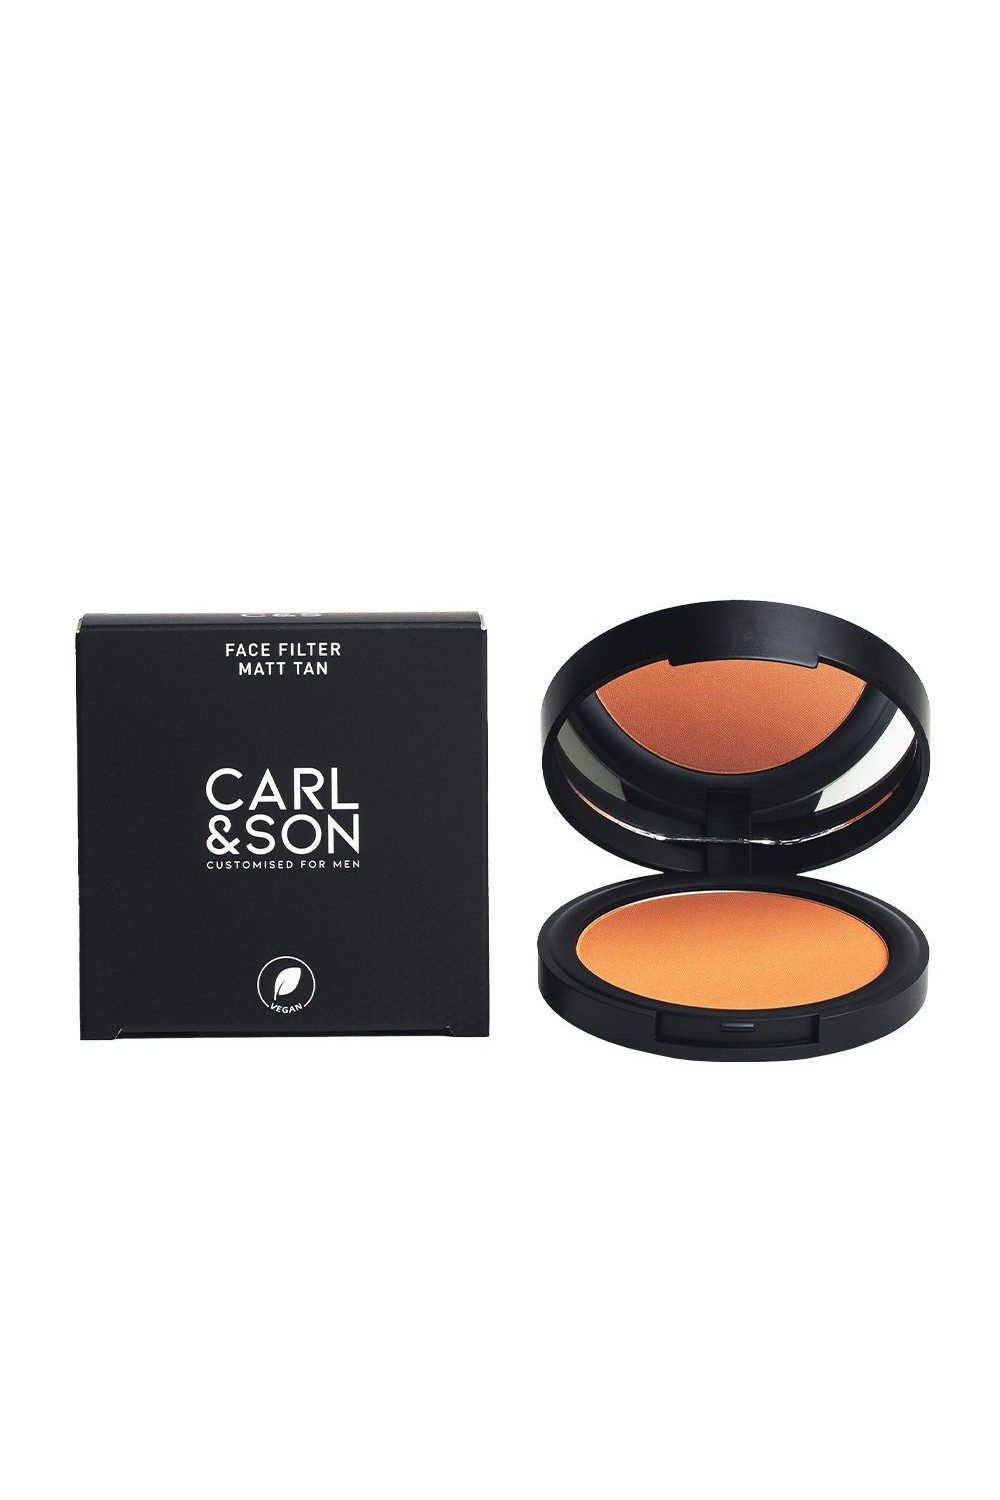 CARL&SON - Carl & Son Face Filter Matt Tan 3 Medium 9,6g